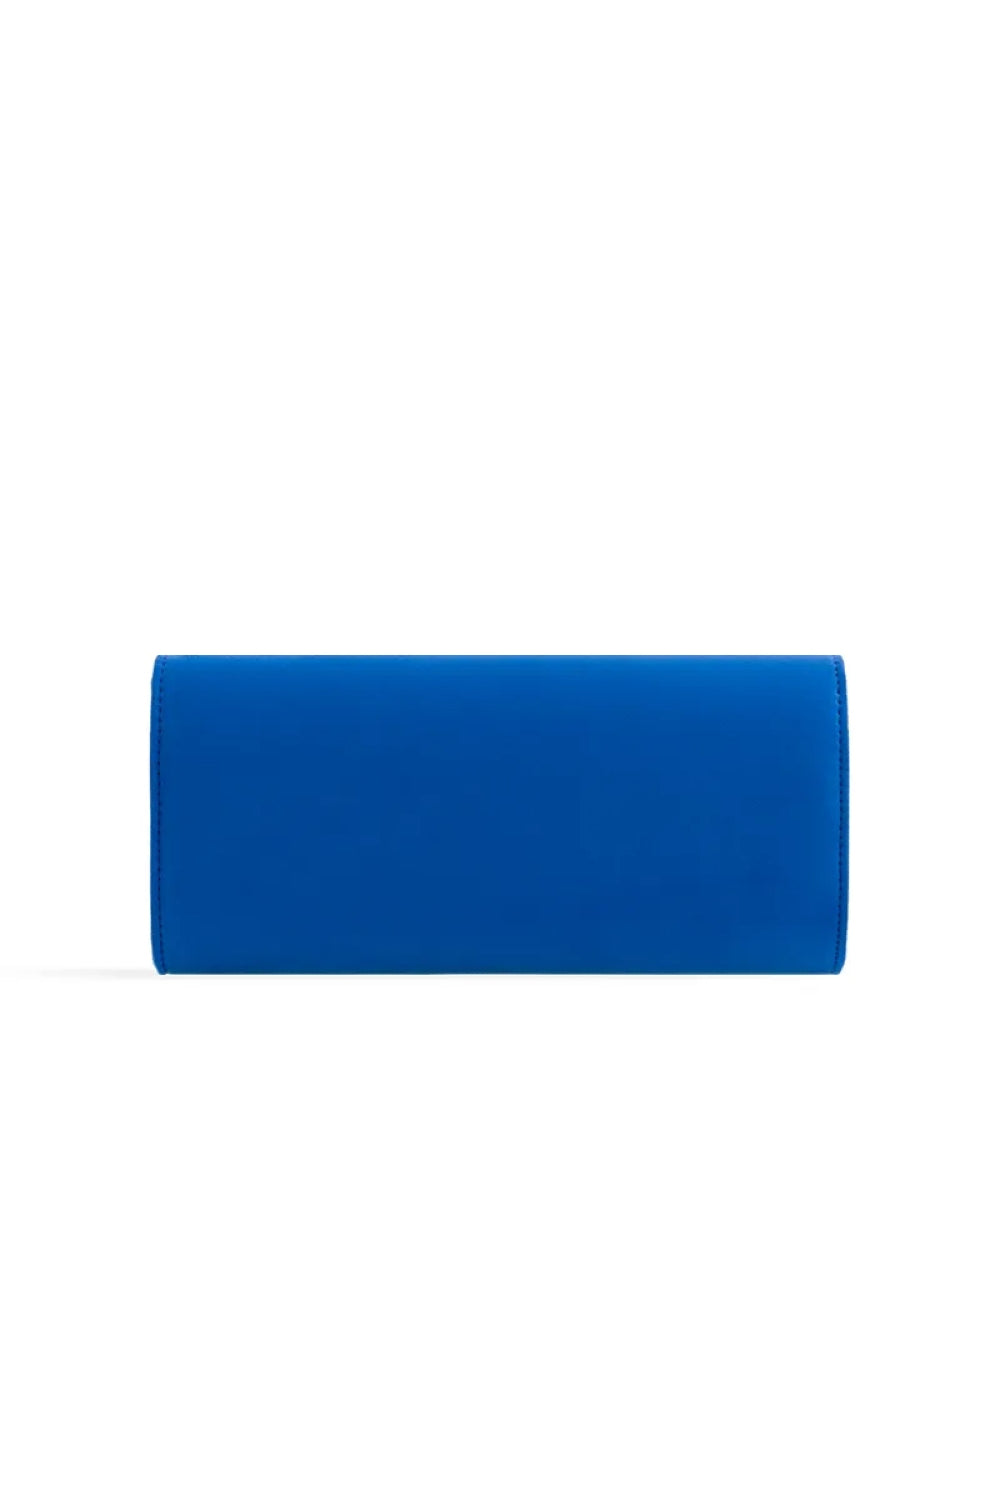 Royal Blue Suede Envelope Clutch Bag ALL2435